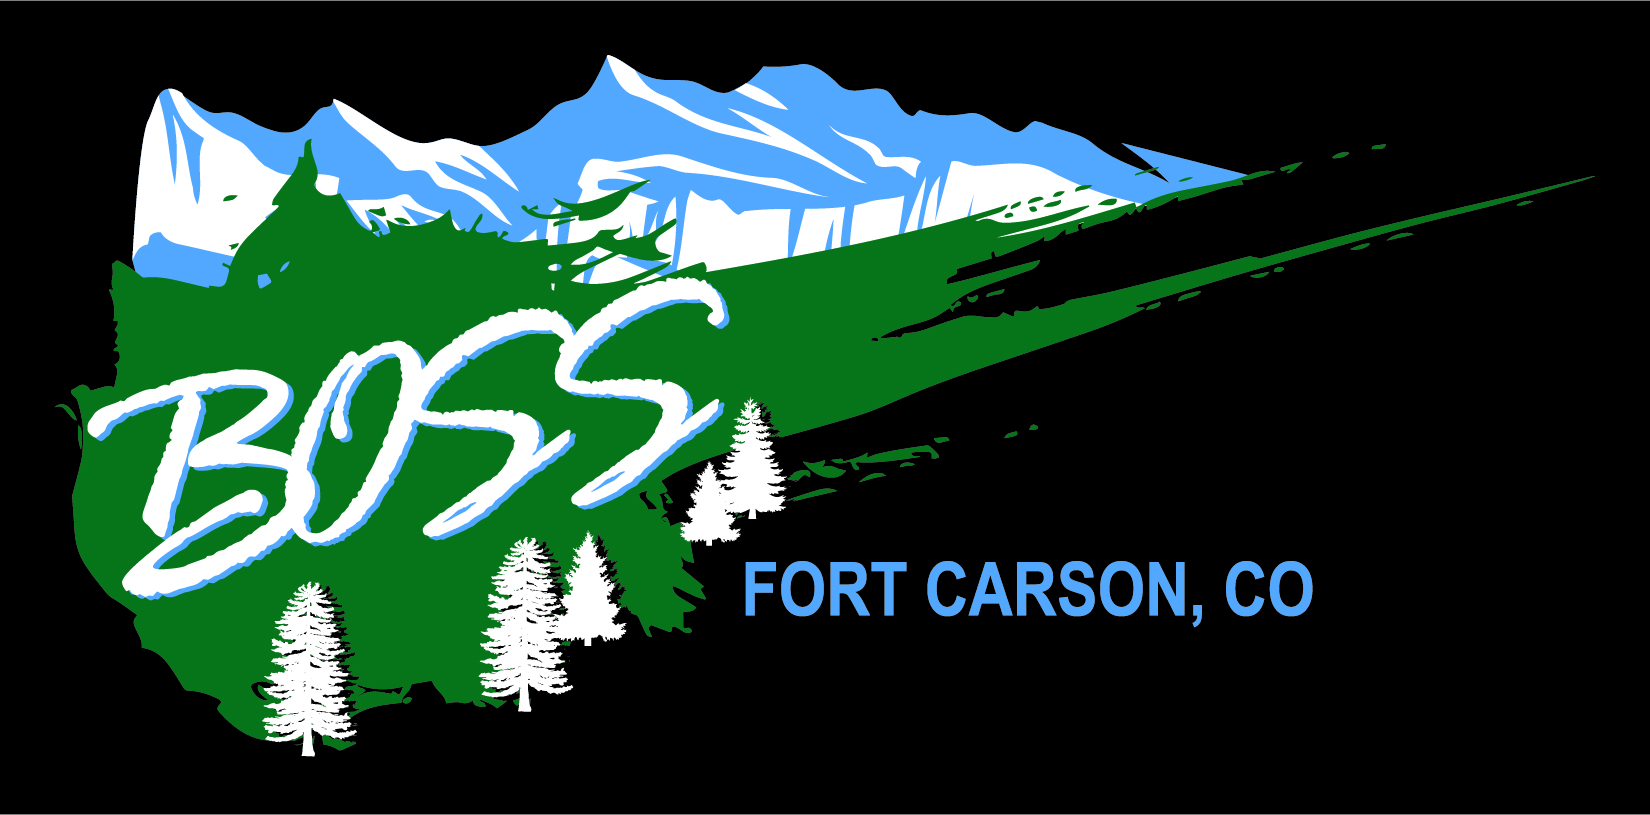 Fort Carson BOSS logo 1.jpg